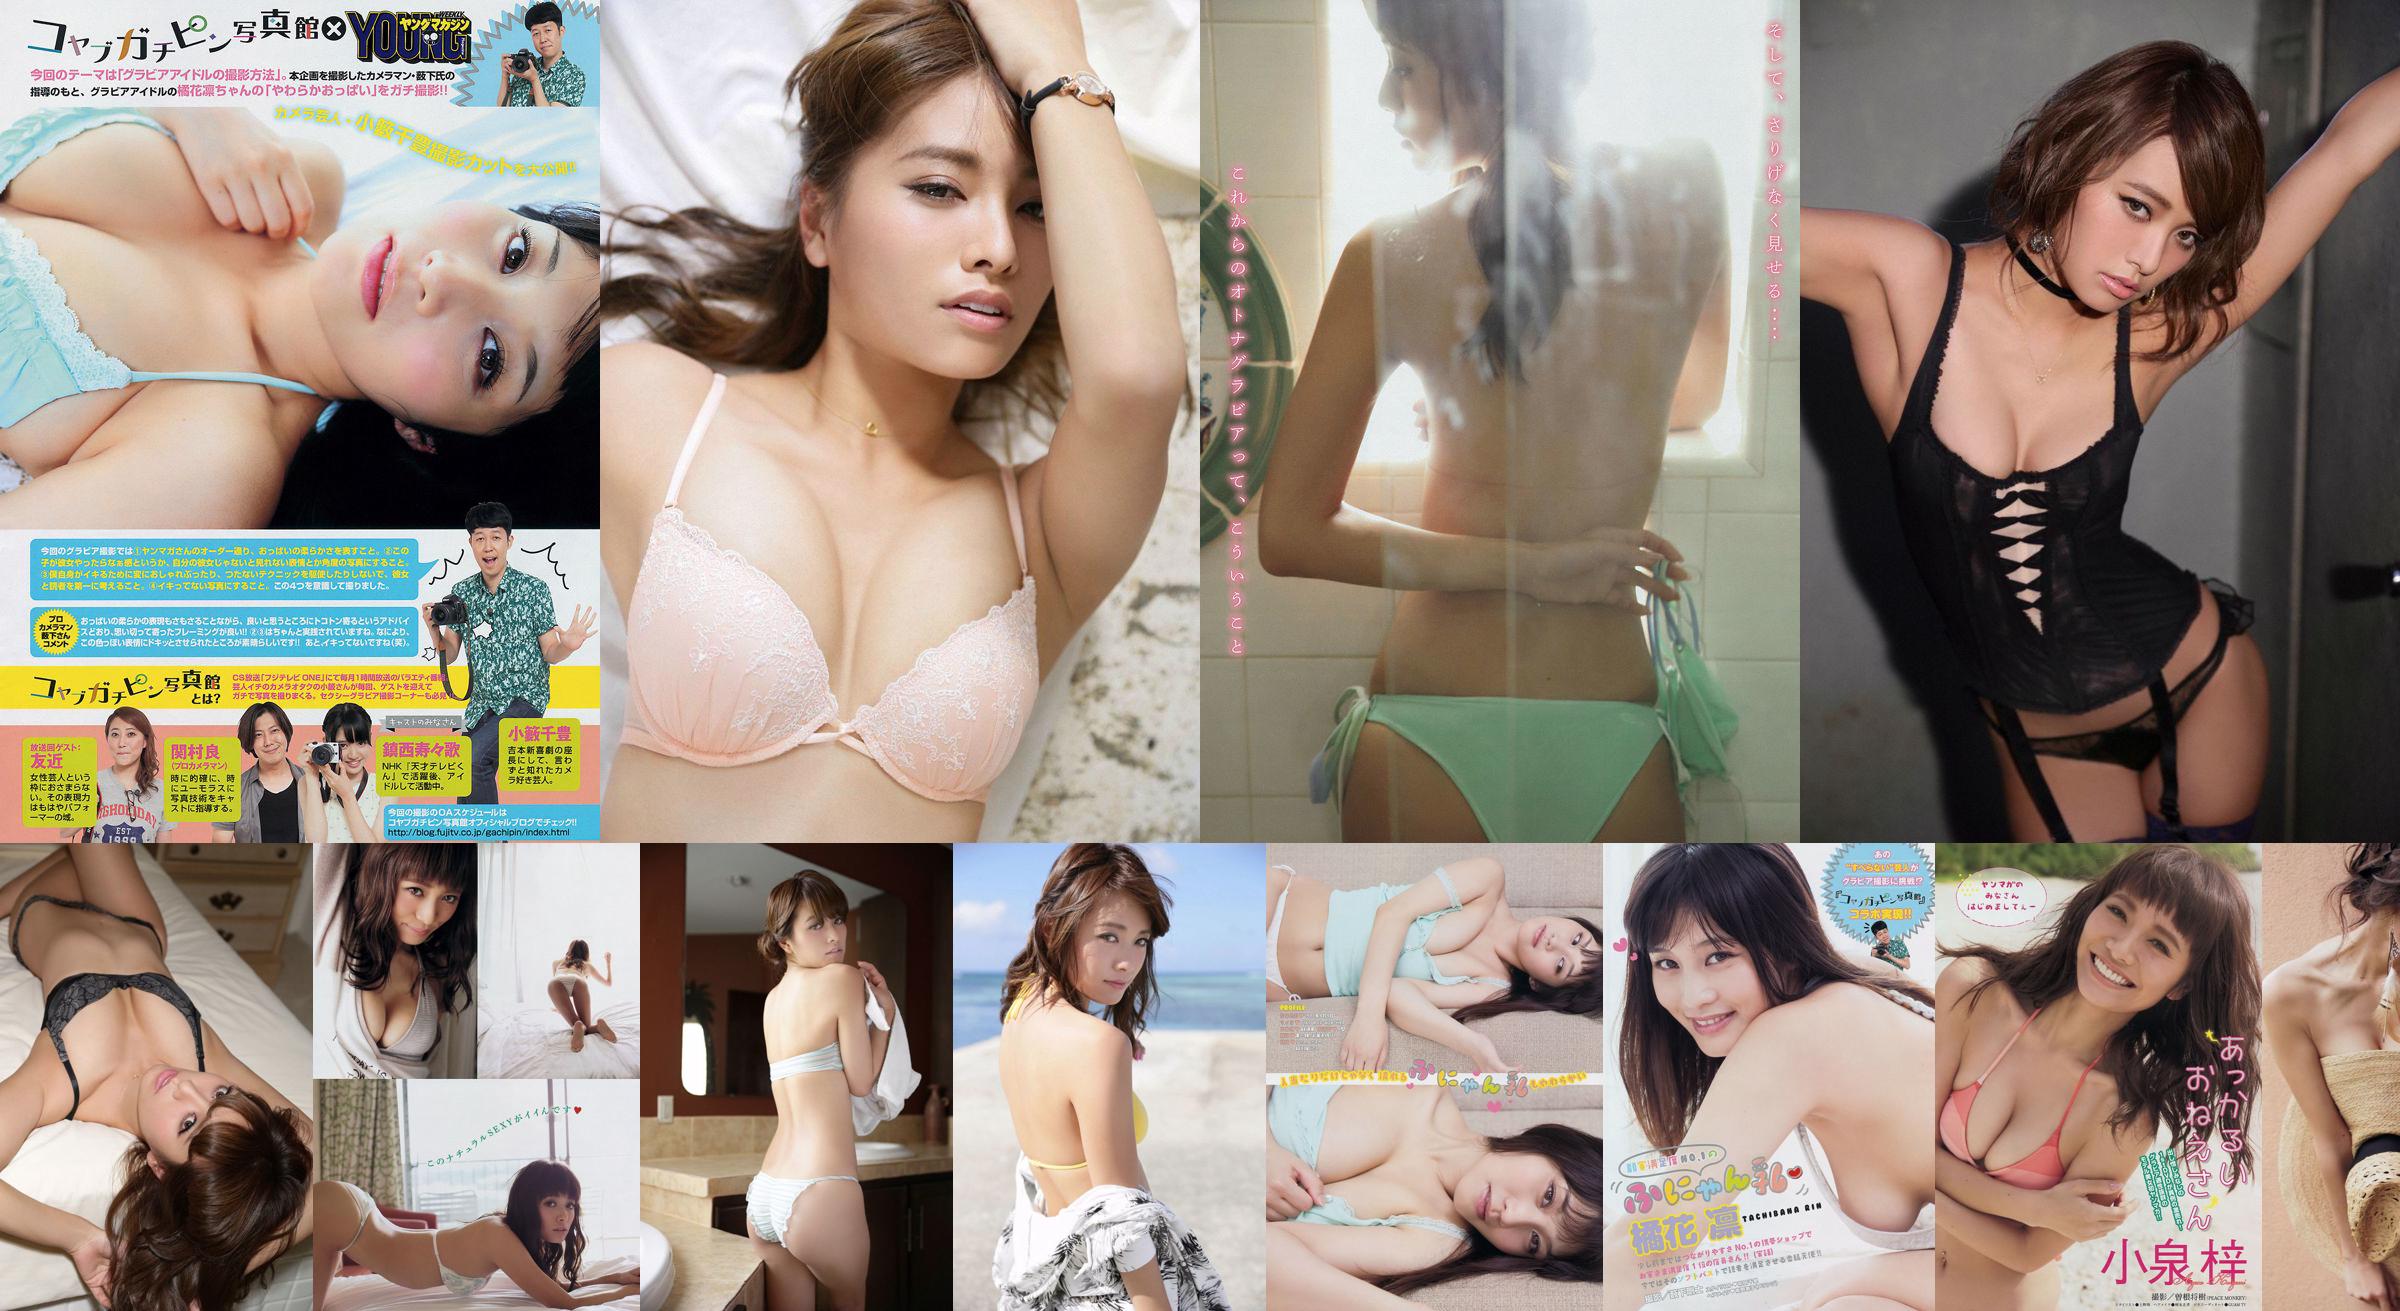 [Young Magazine] Azusa Koizumi Tachibana Rin 2014 No.43 Photo Magazine No.69707d Página 1